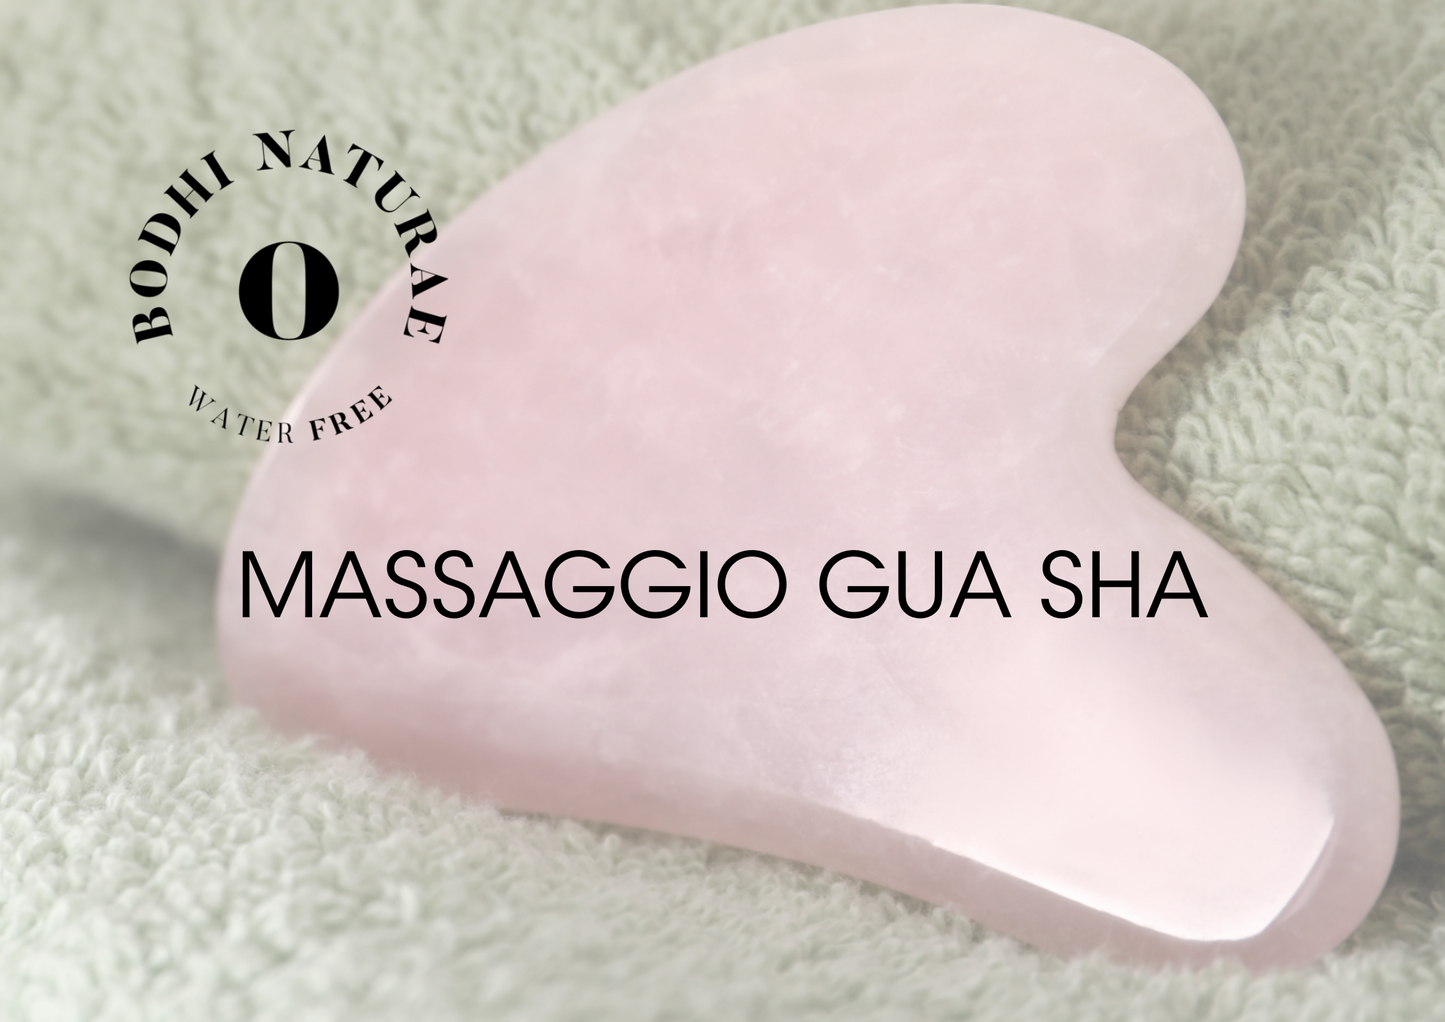 Massaggio Gua Sha - Bodhi Naturae